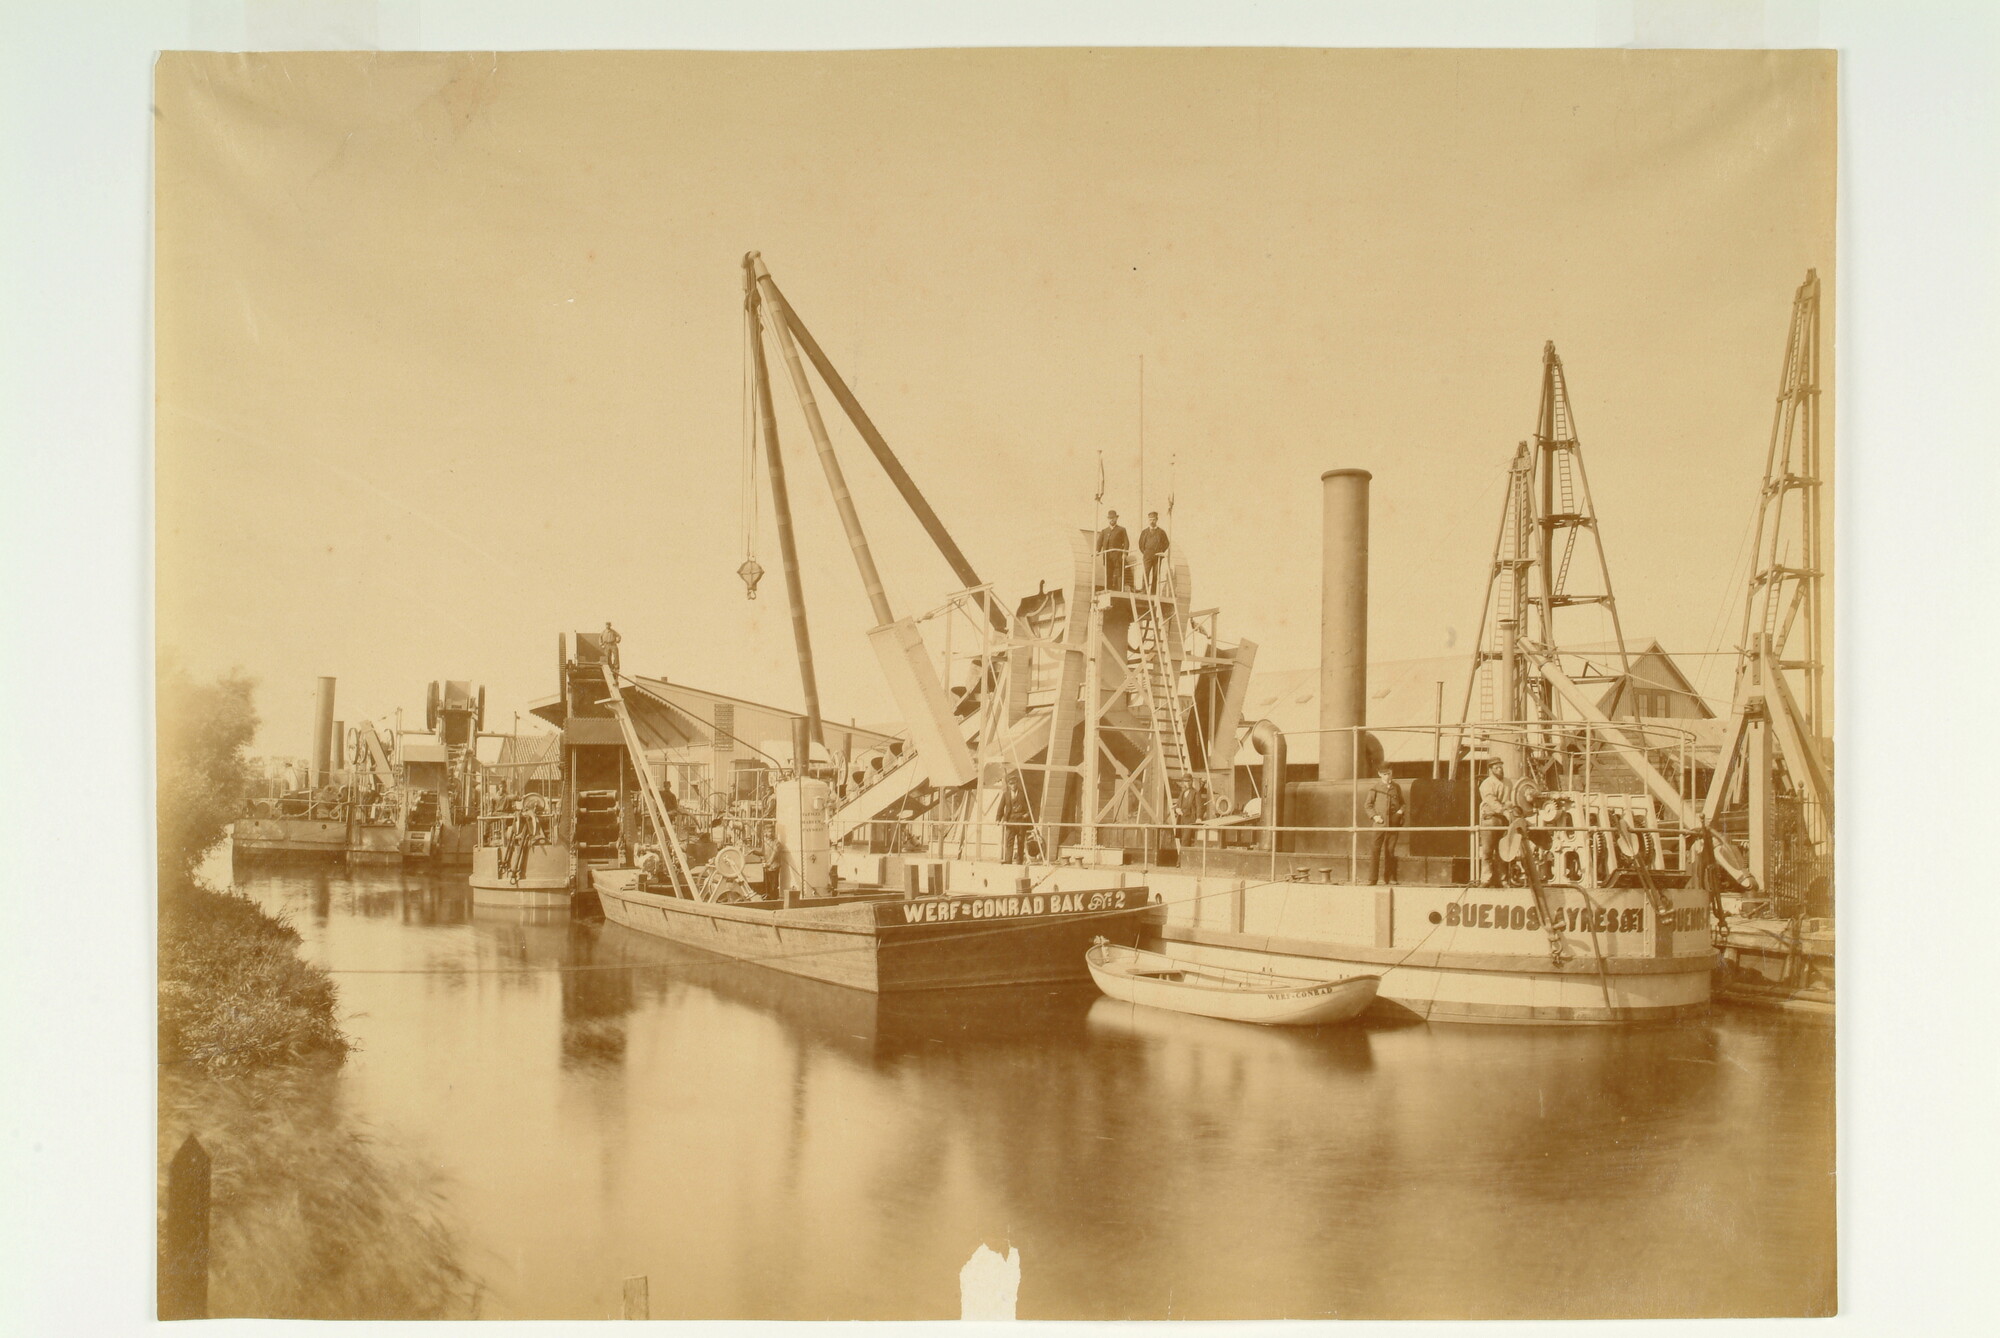 S.0687(03)c; De baggermolen 'Buenes Ayres', gebouwd in 1885 op de Werf Conrad, in opdracht van M.M. Lavalle, Medici & Cie voor het werk in de haven van Ensenada; foto